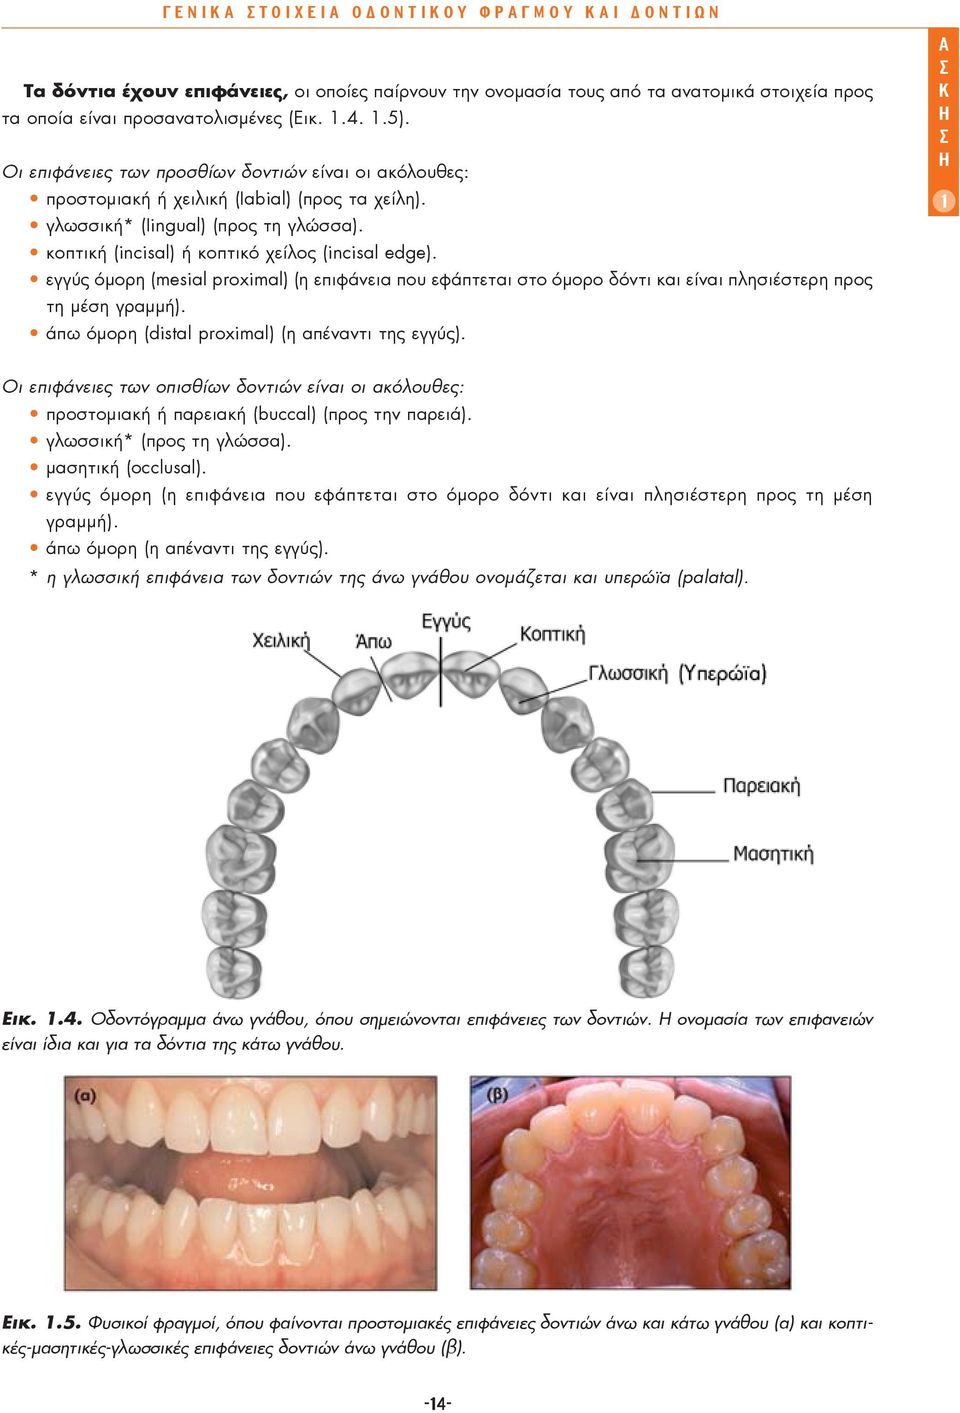 εγγύς όμορη (mesial proximal) (η επιφάνεια που εφάπτεται στο όμορο δόντι και είναι πλησιέστερη προς τη μέση γραμμή). άπω όμορη (distal proximal) (η απέναντι της εγγύς).